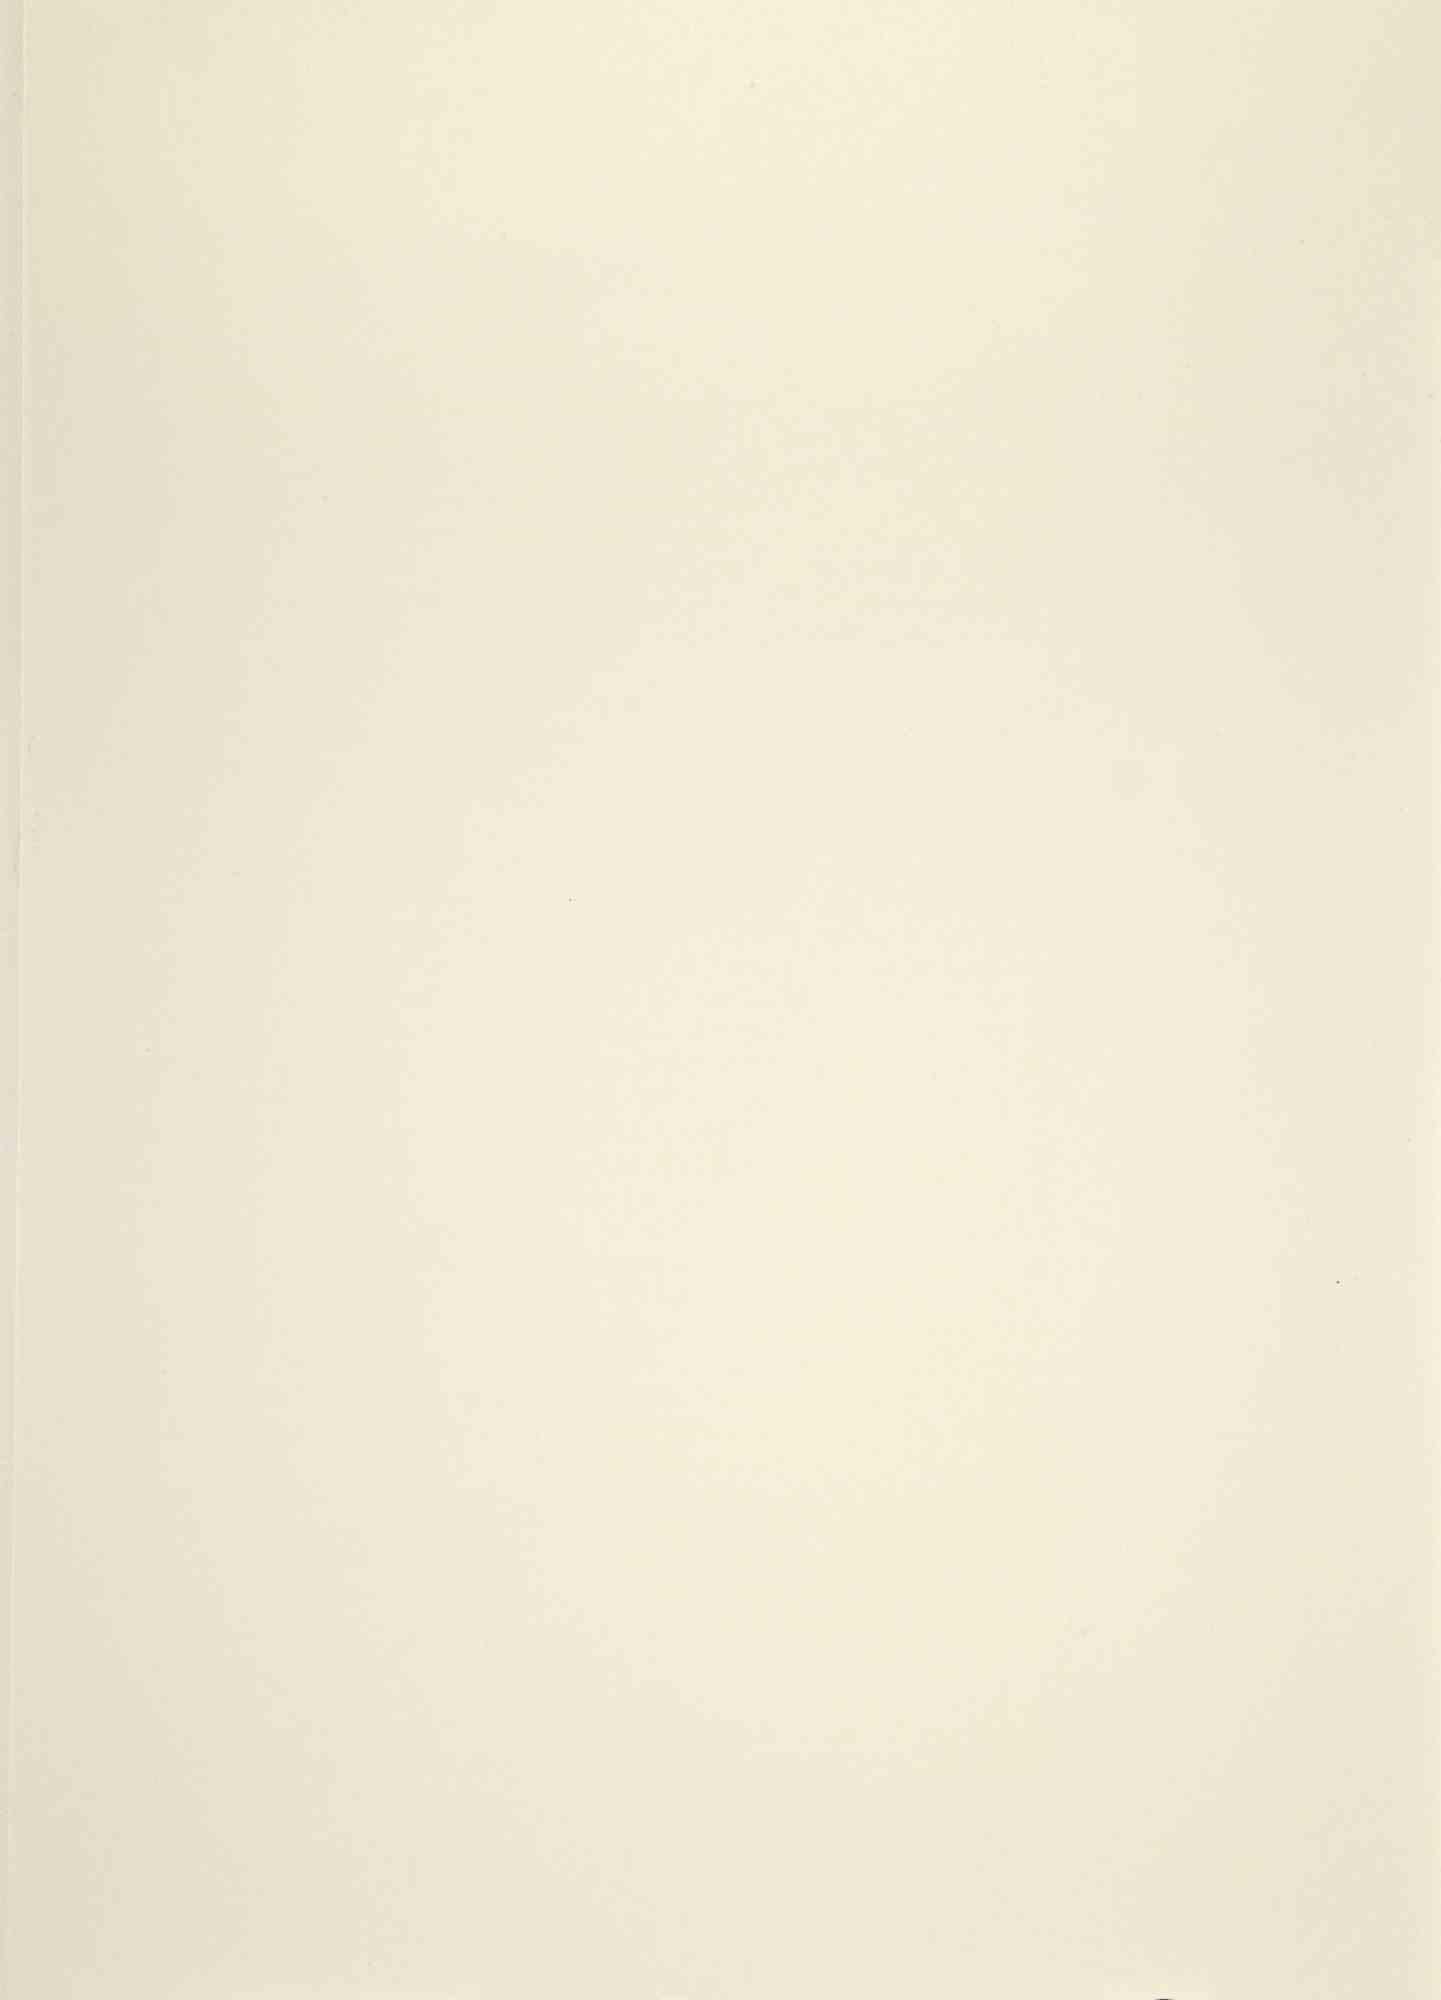 Antequam Exires De Vulva ... - Lithograph - 1964 - Gray Print by Salvador Dalí